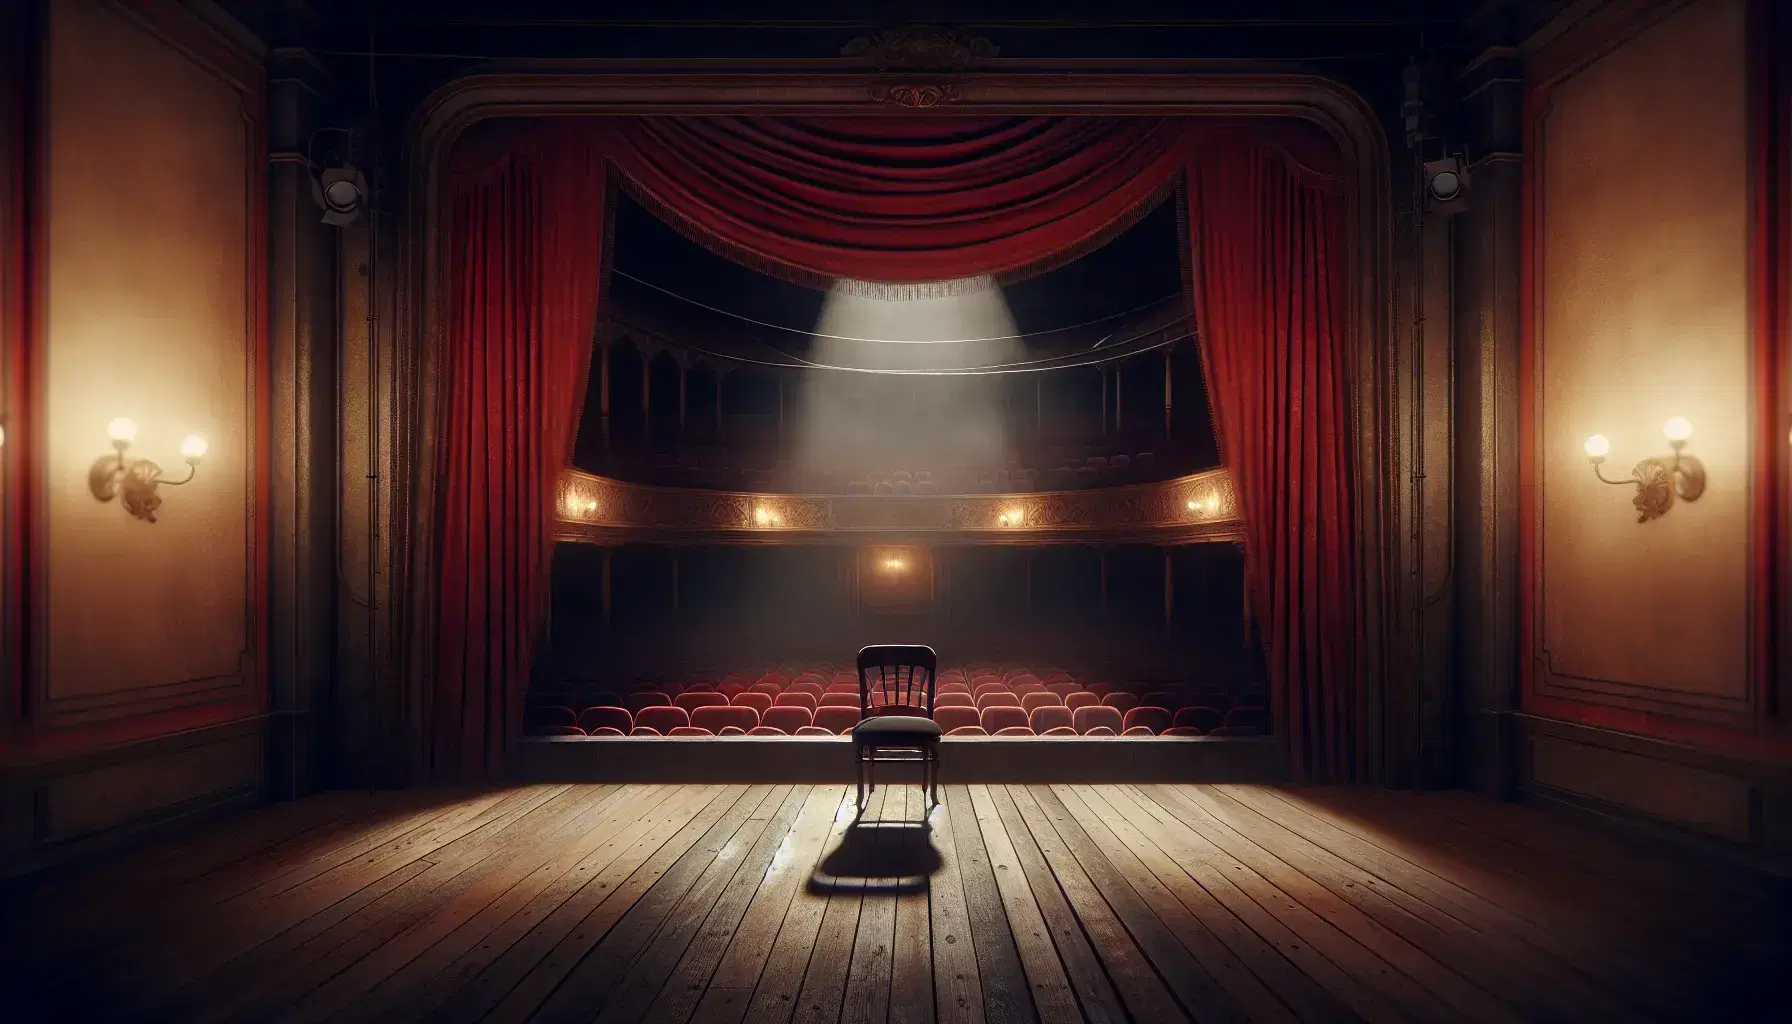 Escenario teatral vacío con cortinas rojas de terciopelo, silla de madera antigua en el centro y suave iluminación proyectando sombras.